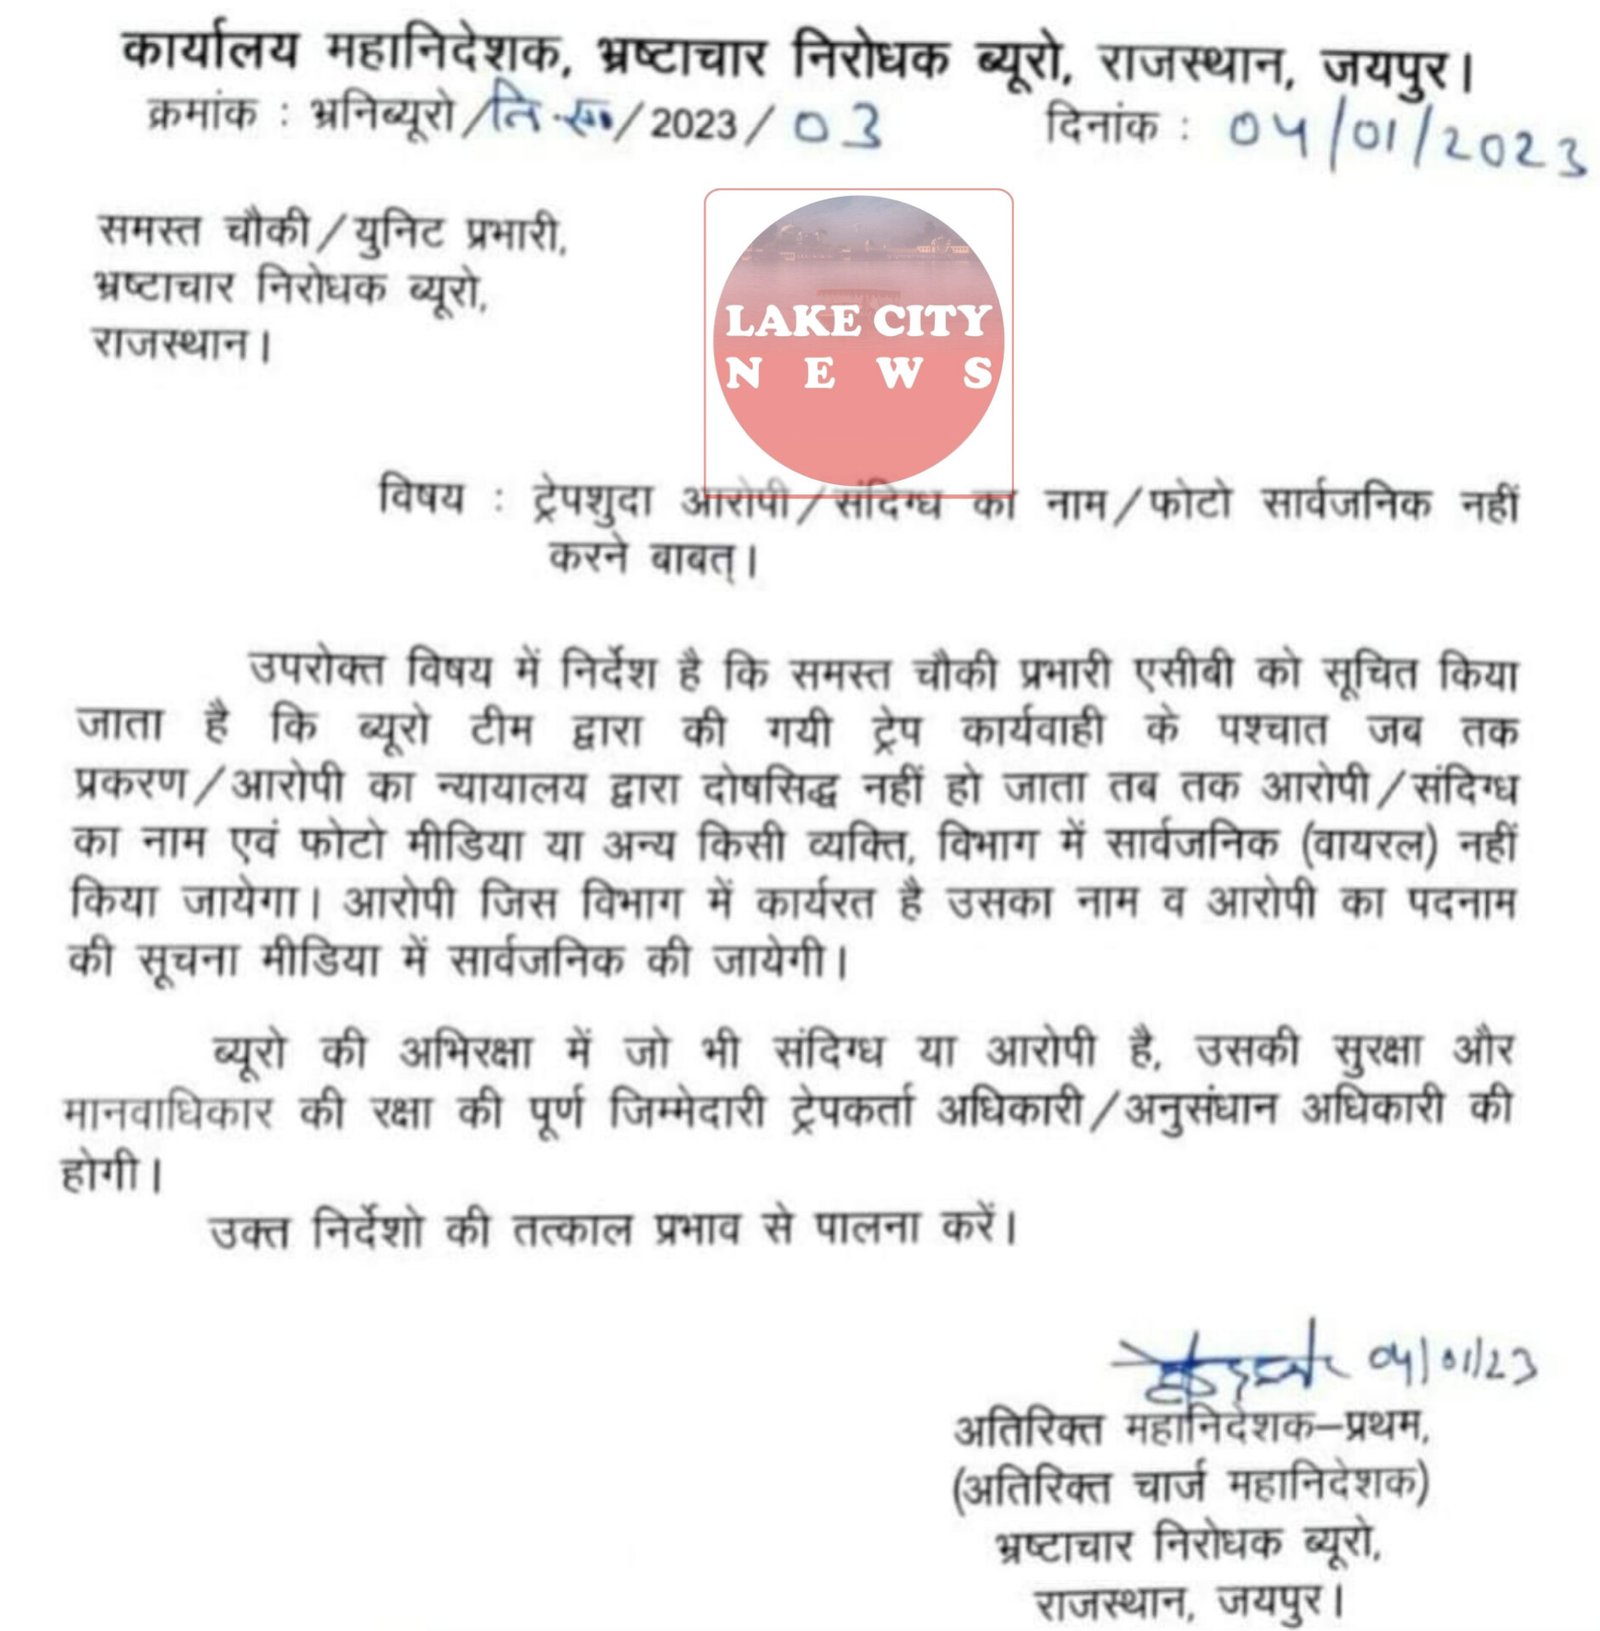 अब राजस्थान में रिश्वतखोरो की जांच चलने तक फोटो नाम सार्वजनिक नहीं किए जा सकेंगे आदेश जारी